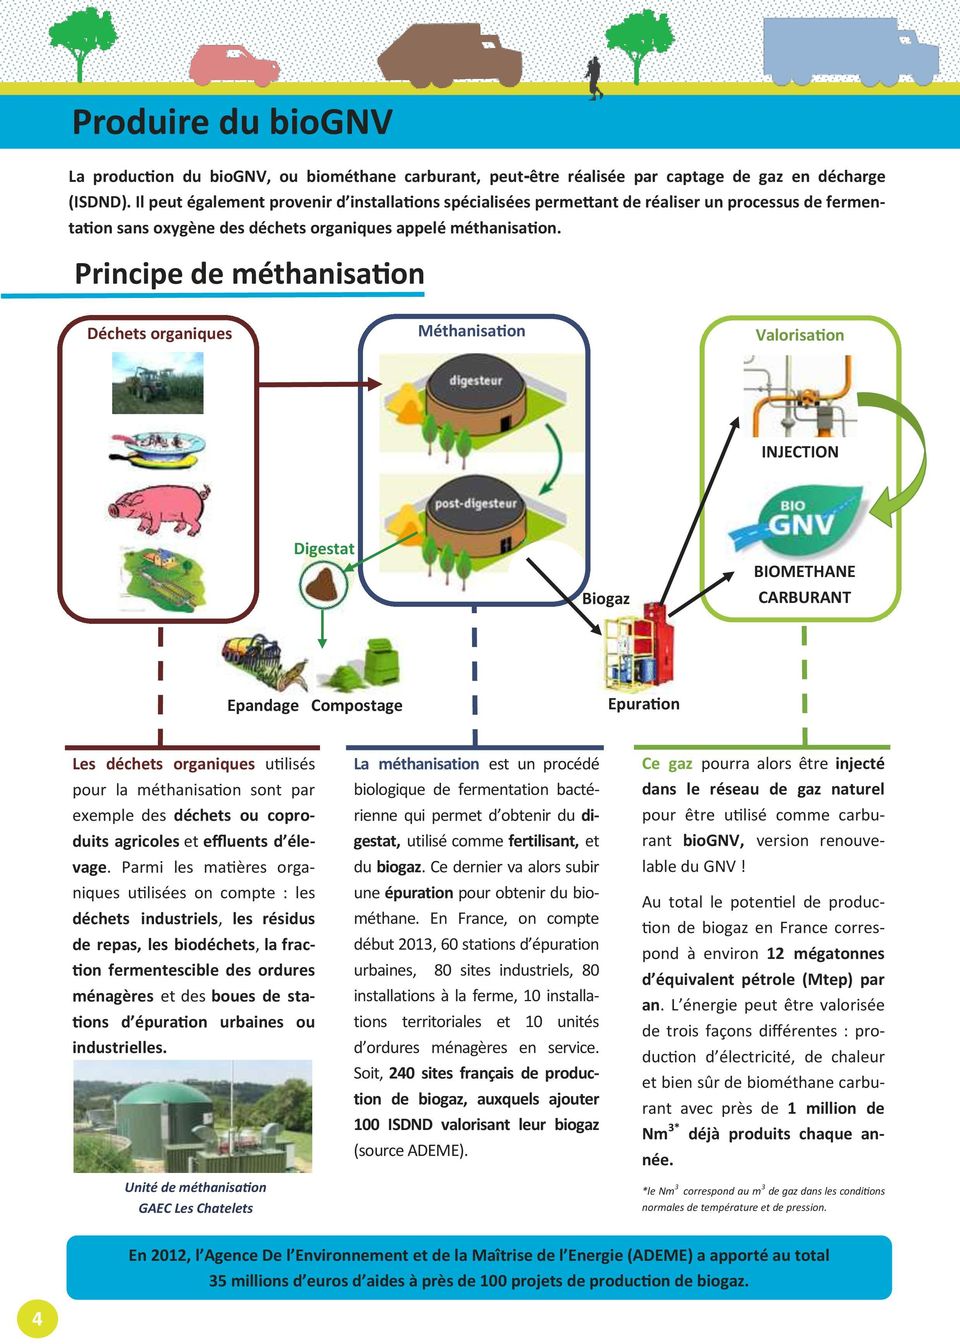 Principe de méthanisation Déchets organiques Méthanisation Valorisation INJECTION Digestat Biogaz BIOMETHANE CARBURANT Epandage Compostage Epuration Les déchets organiques utilisés pour la